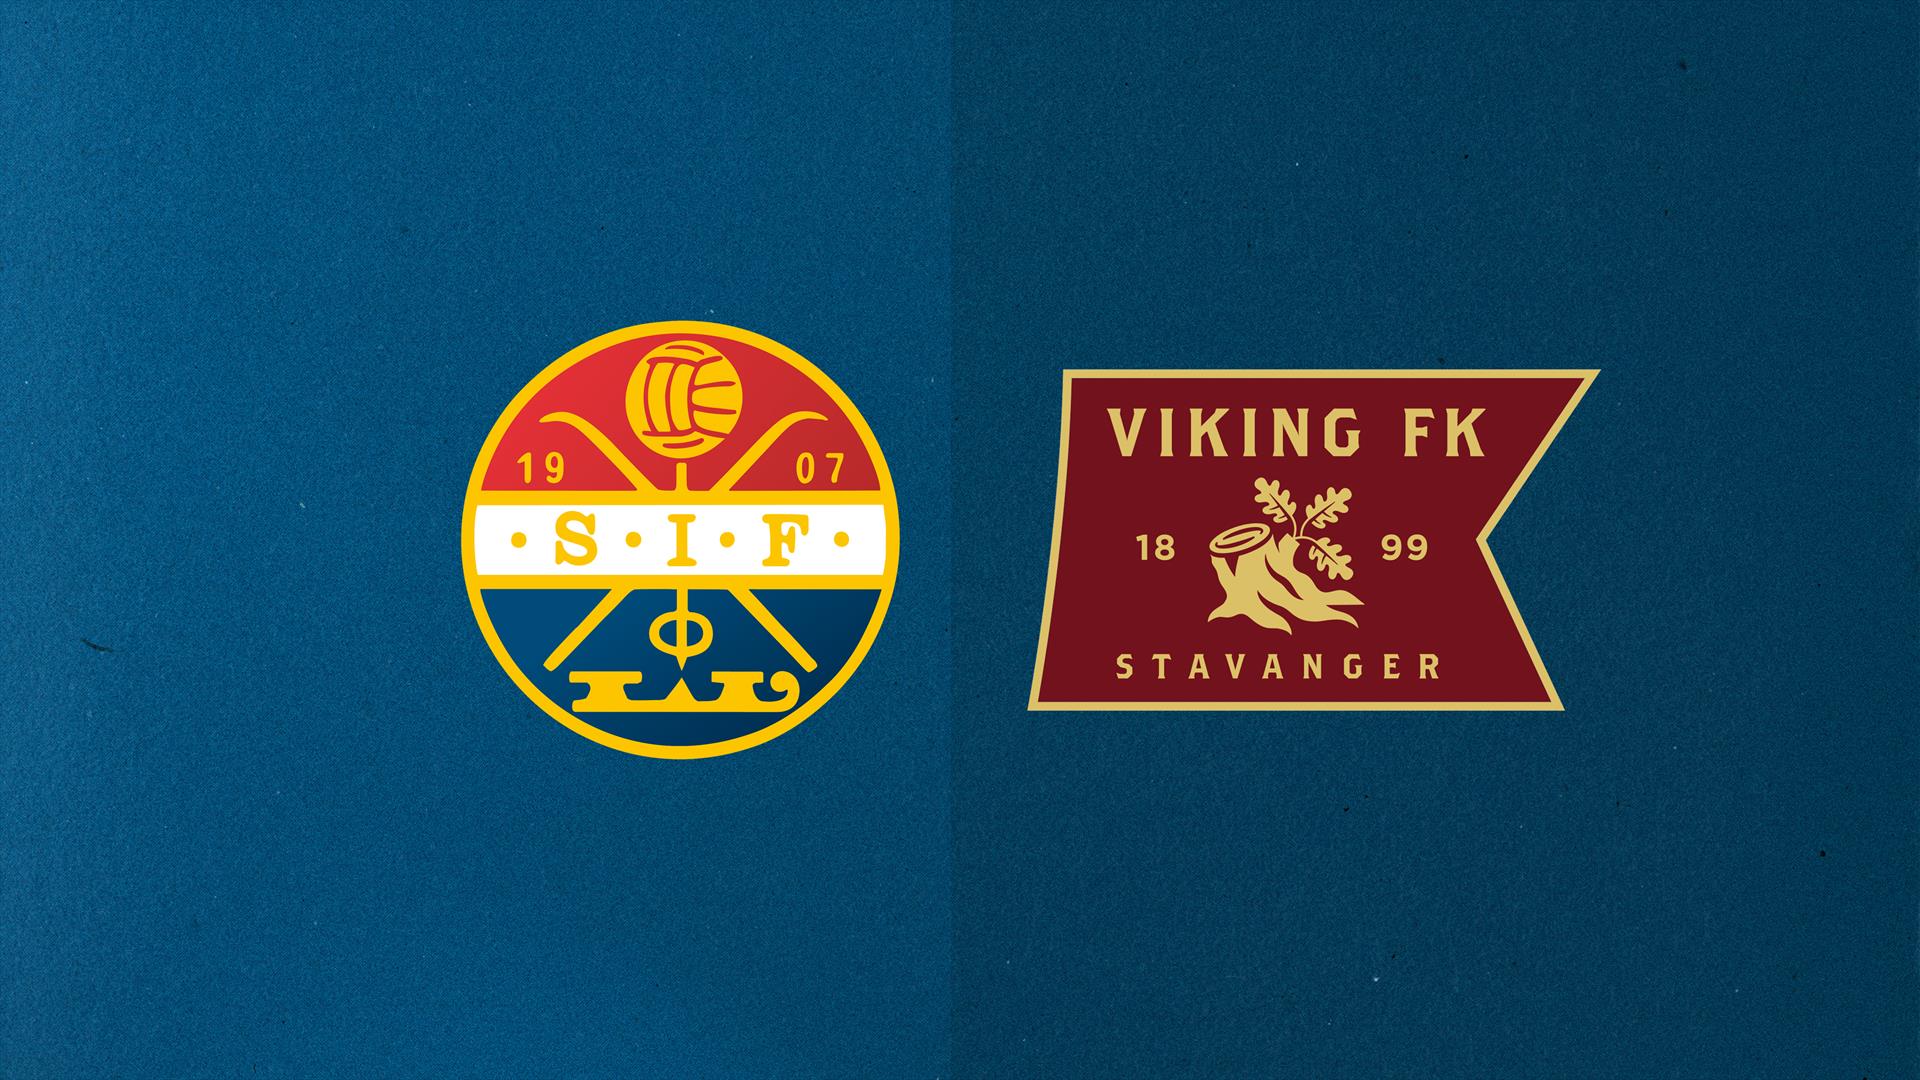 sif-viking